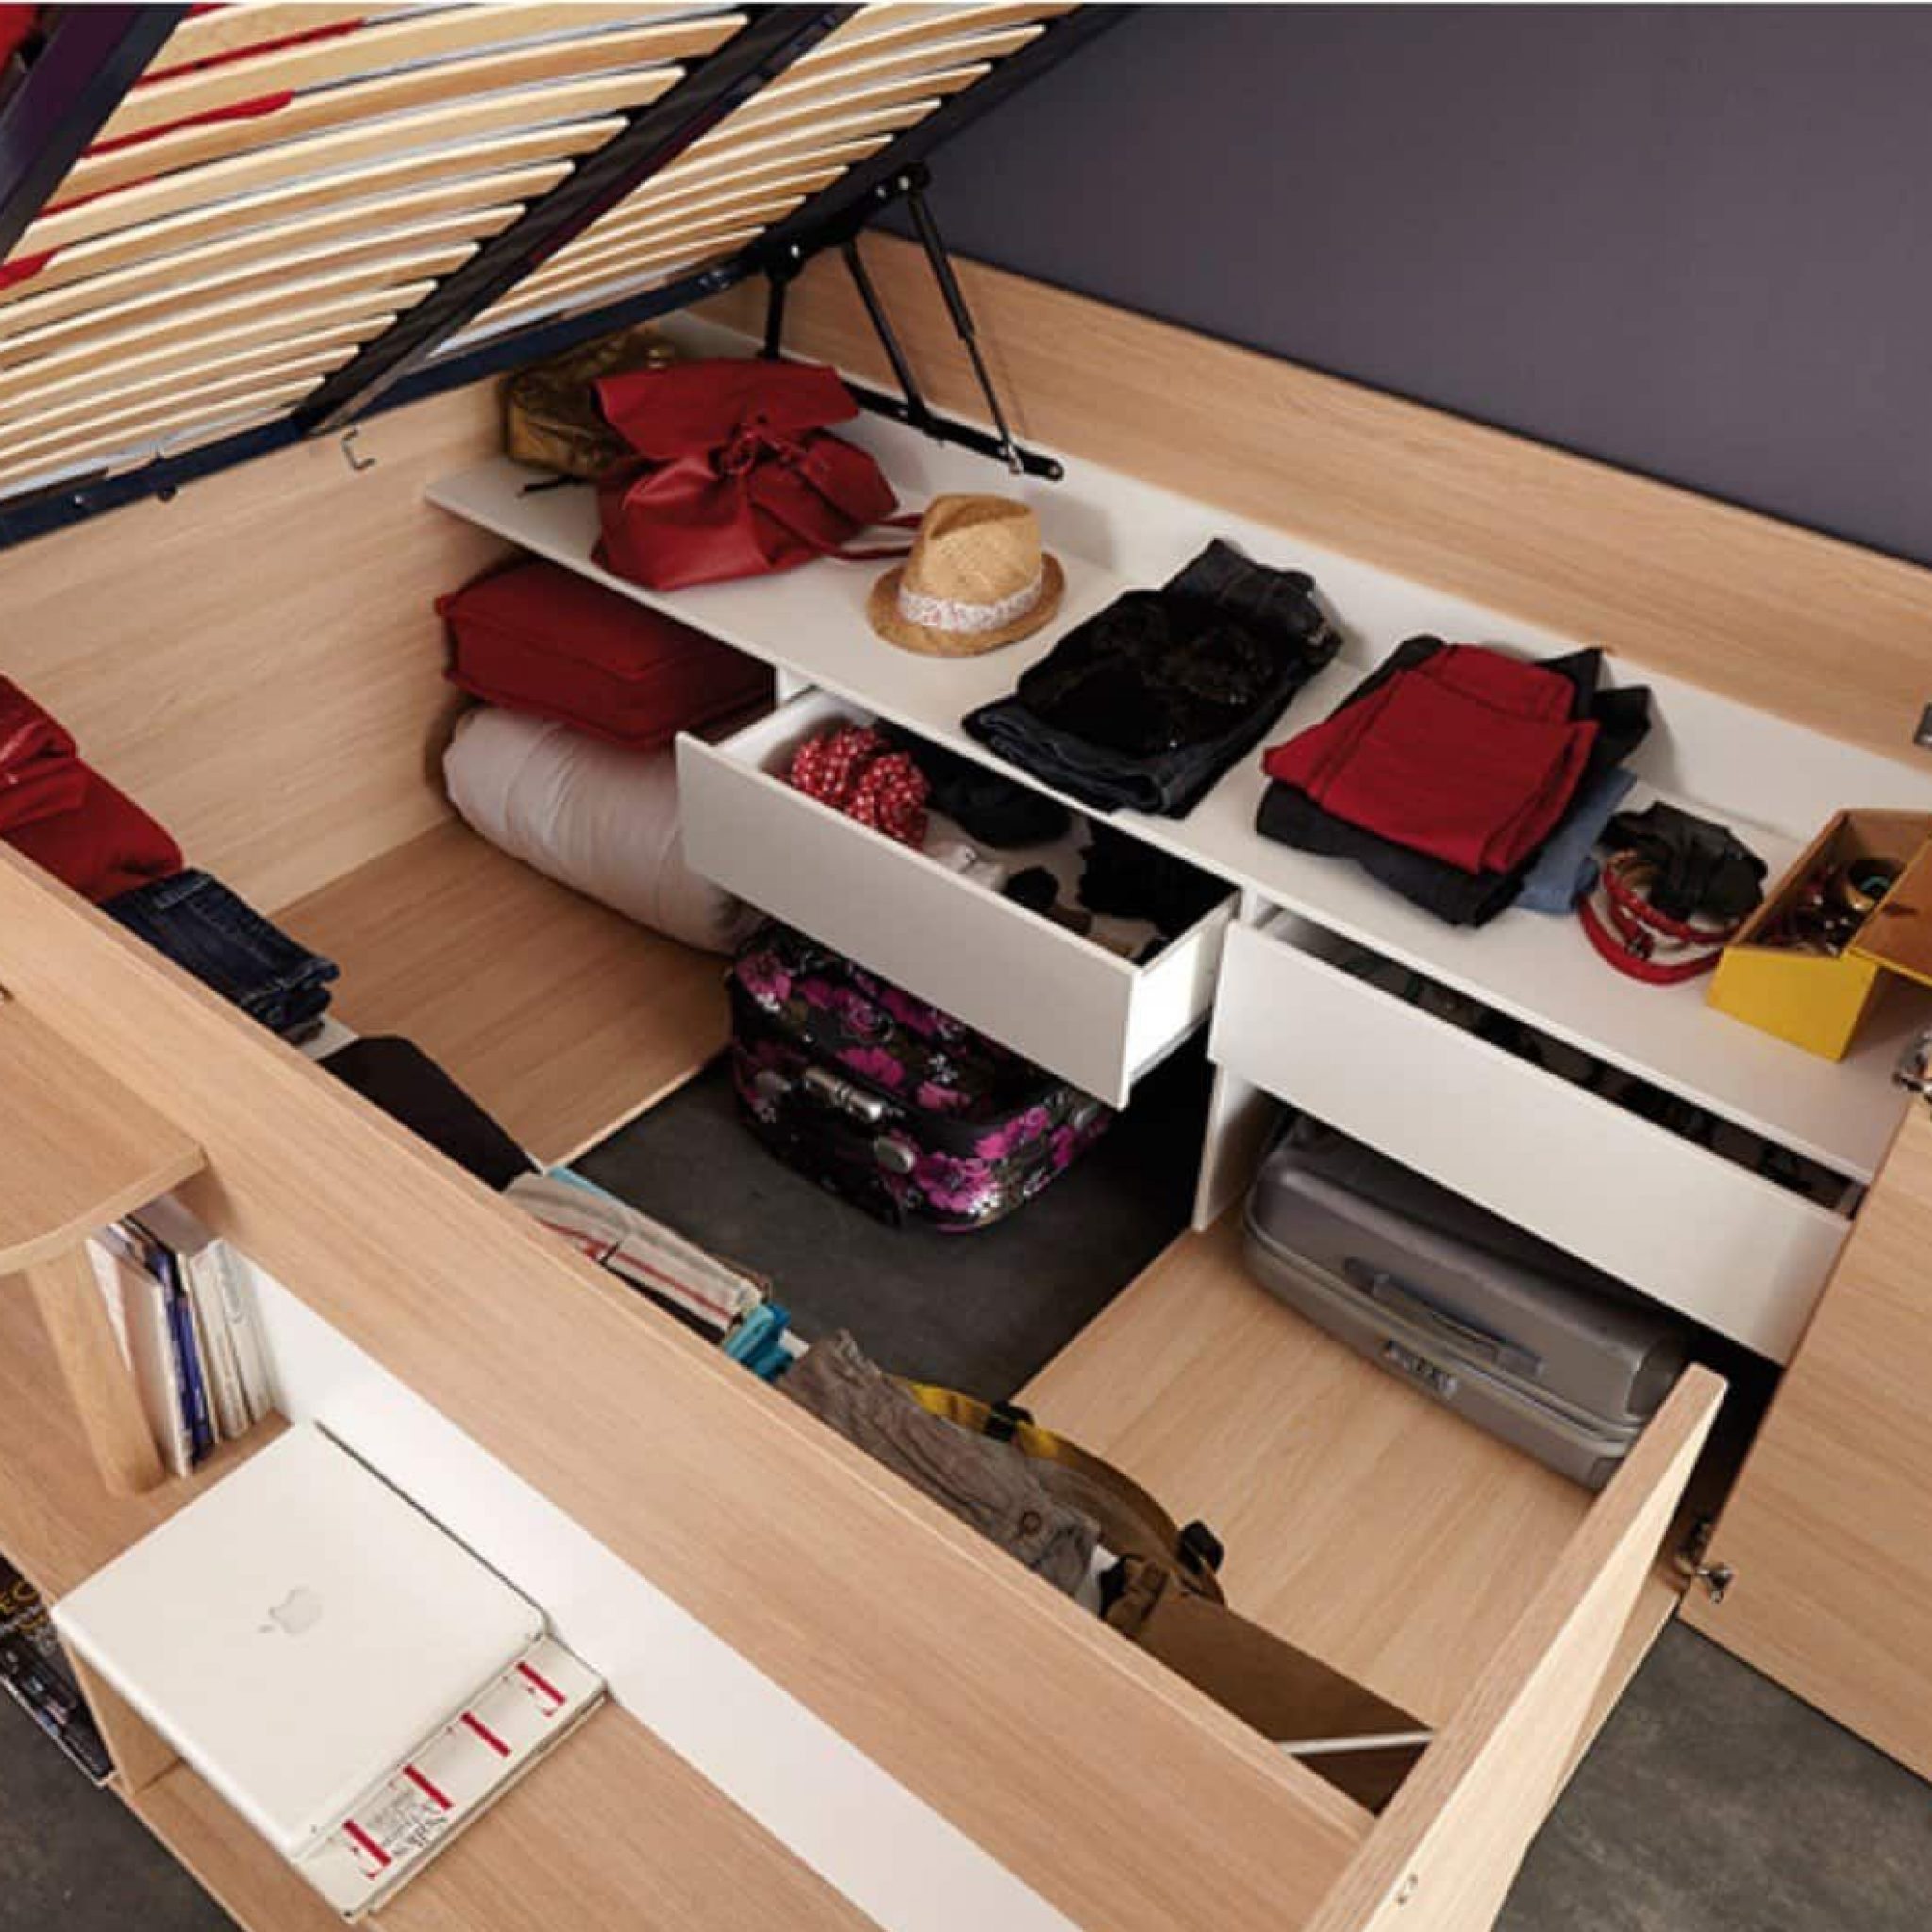 Куда класть. Кровать Parisot Space up. Кровать Parisot Space up чертеж. Кровать подиум с гардеробом. Кровати для экономии пространства.